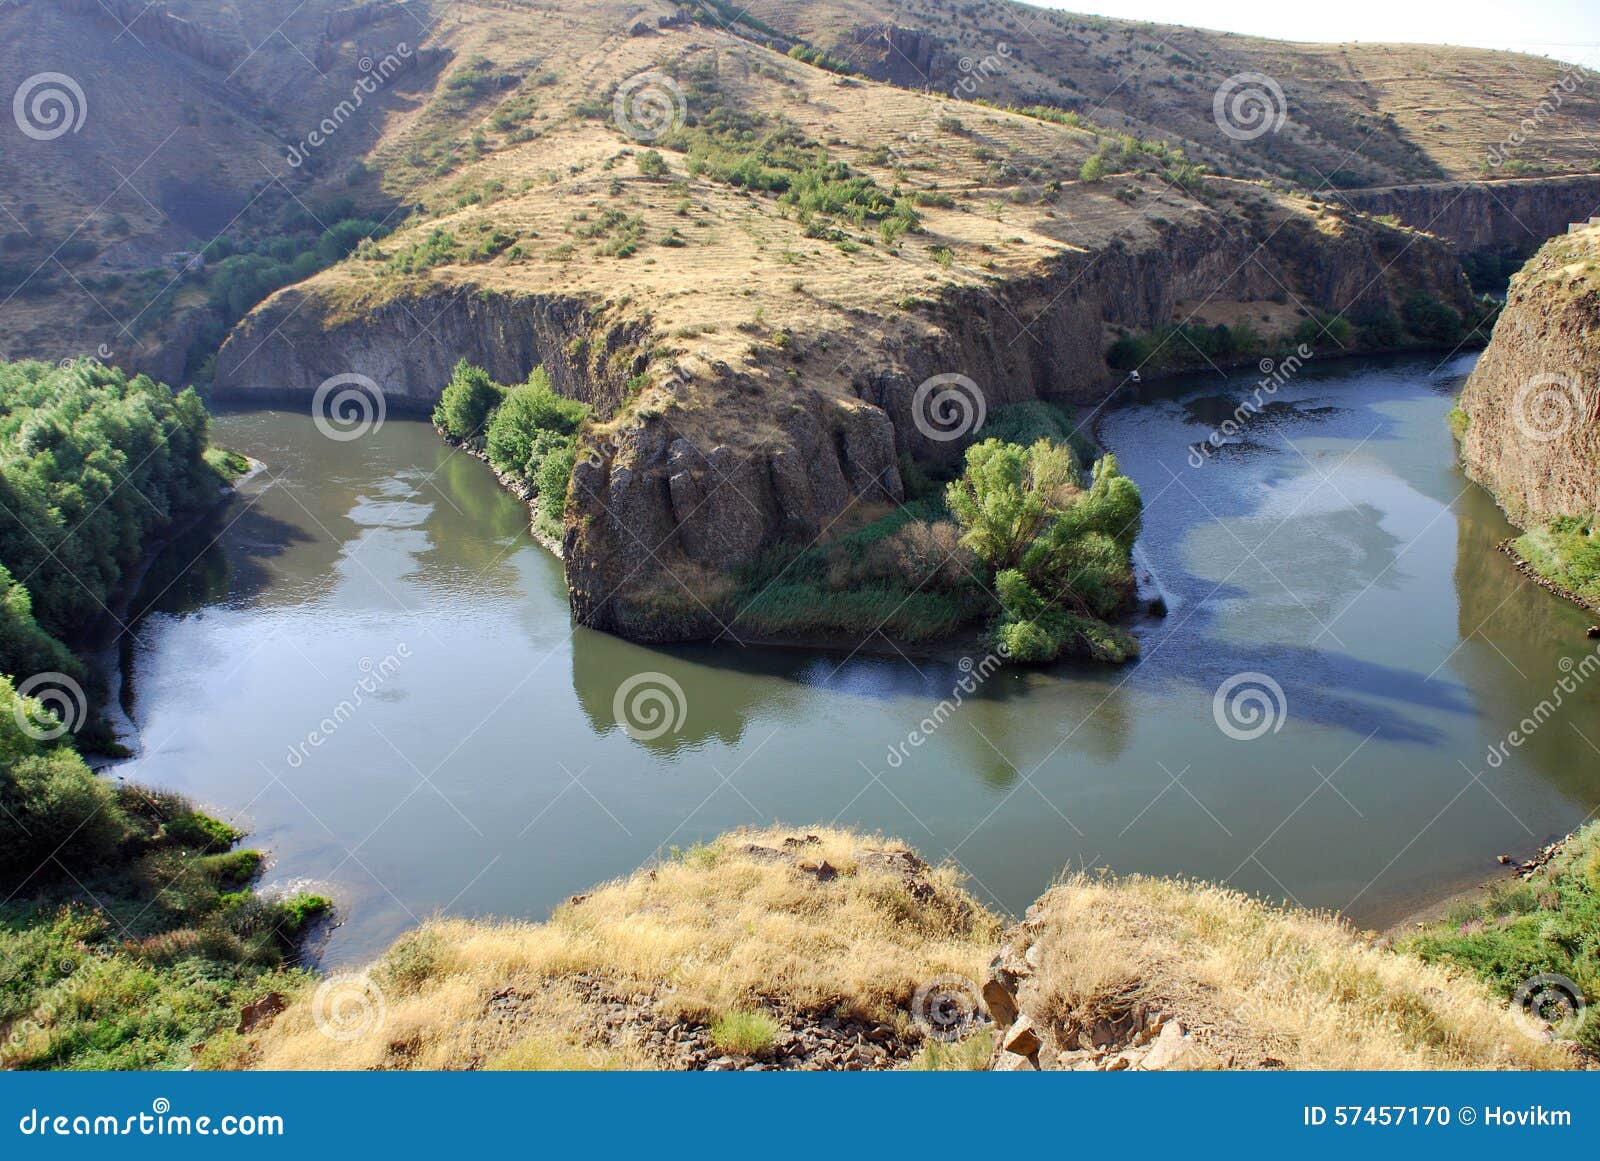 rock in hrazdan river in argel, armenia